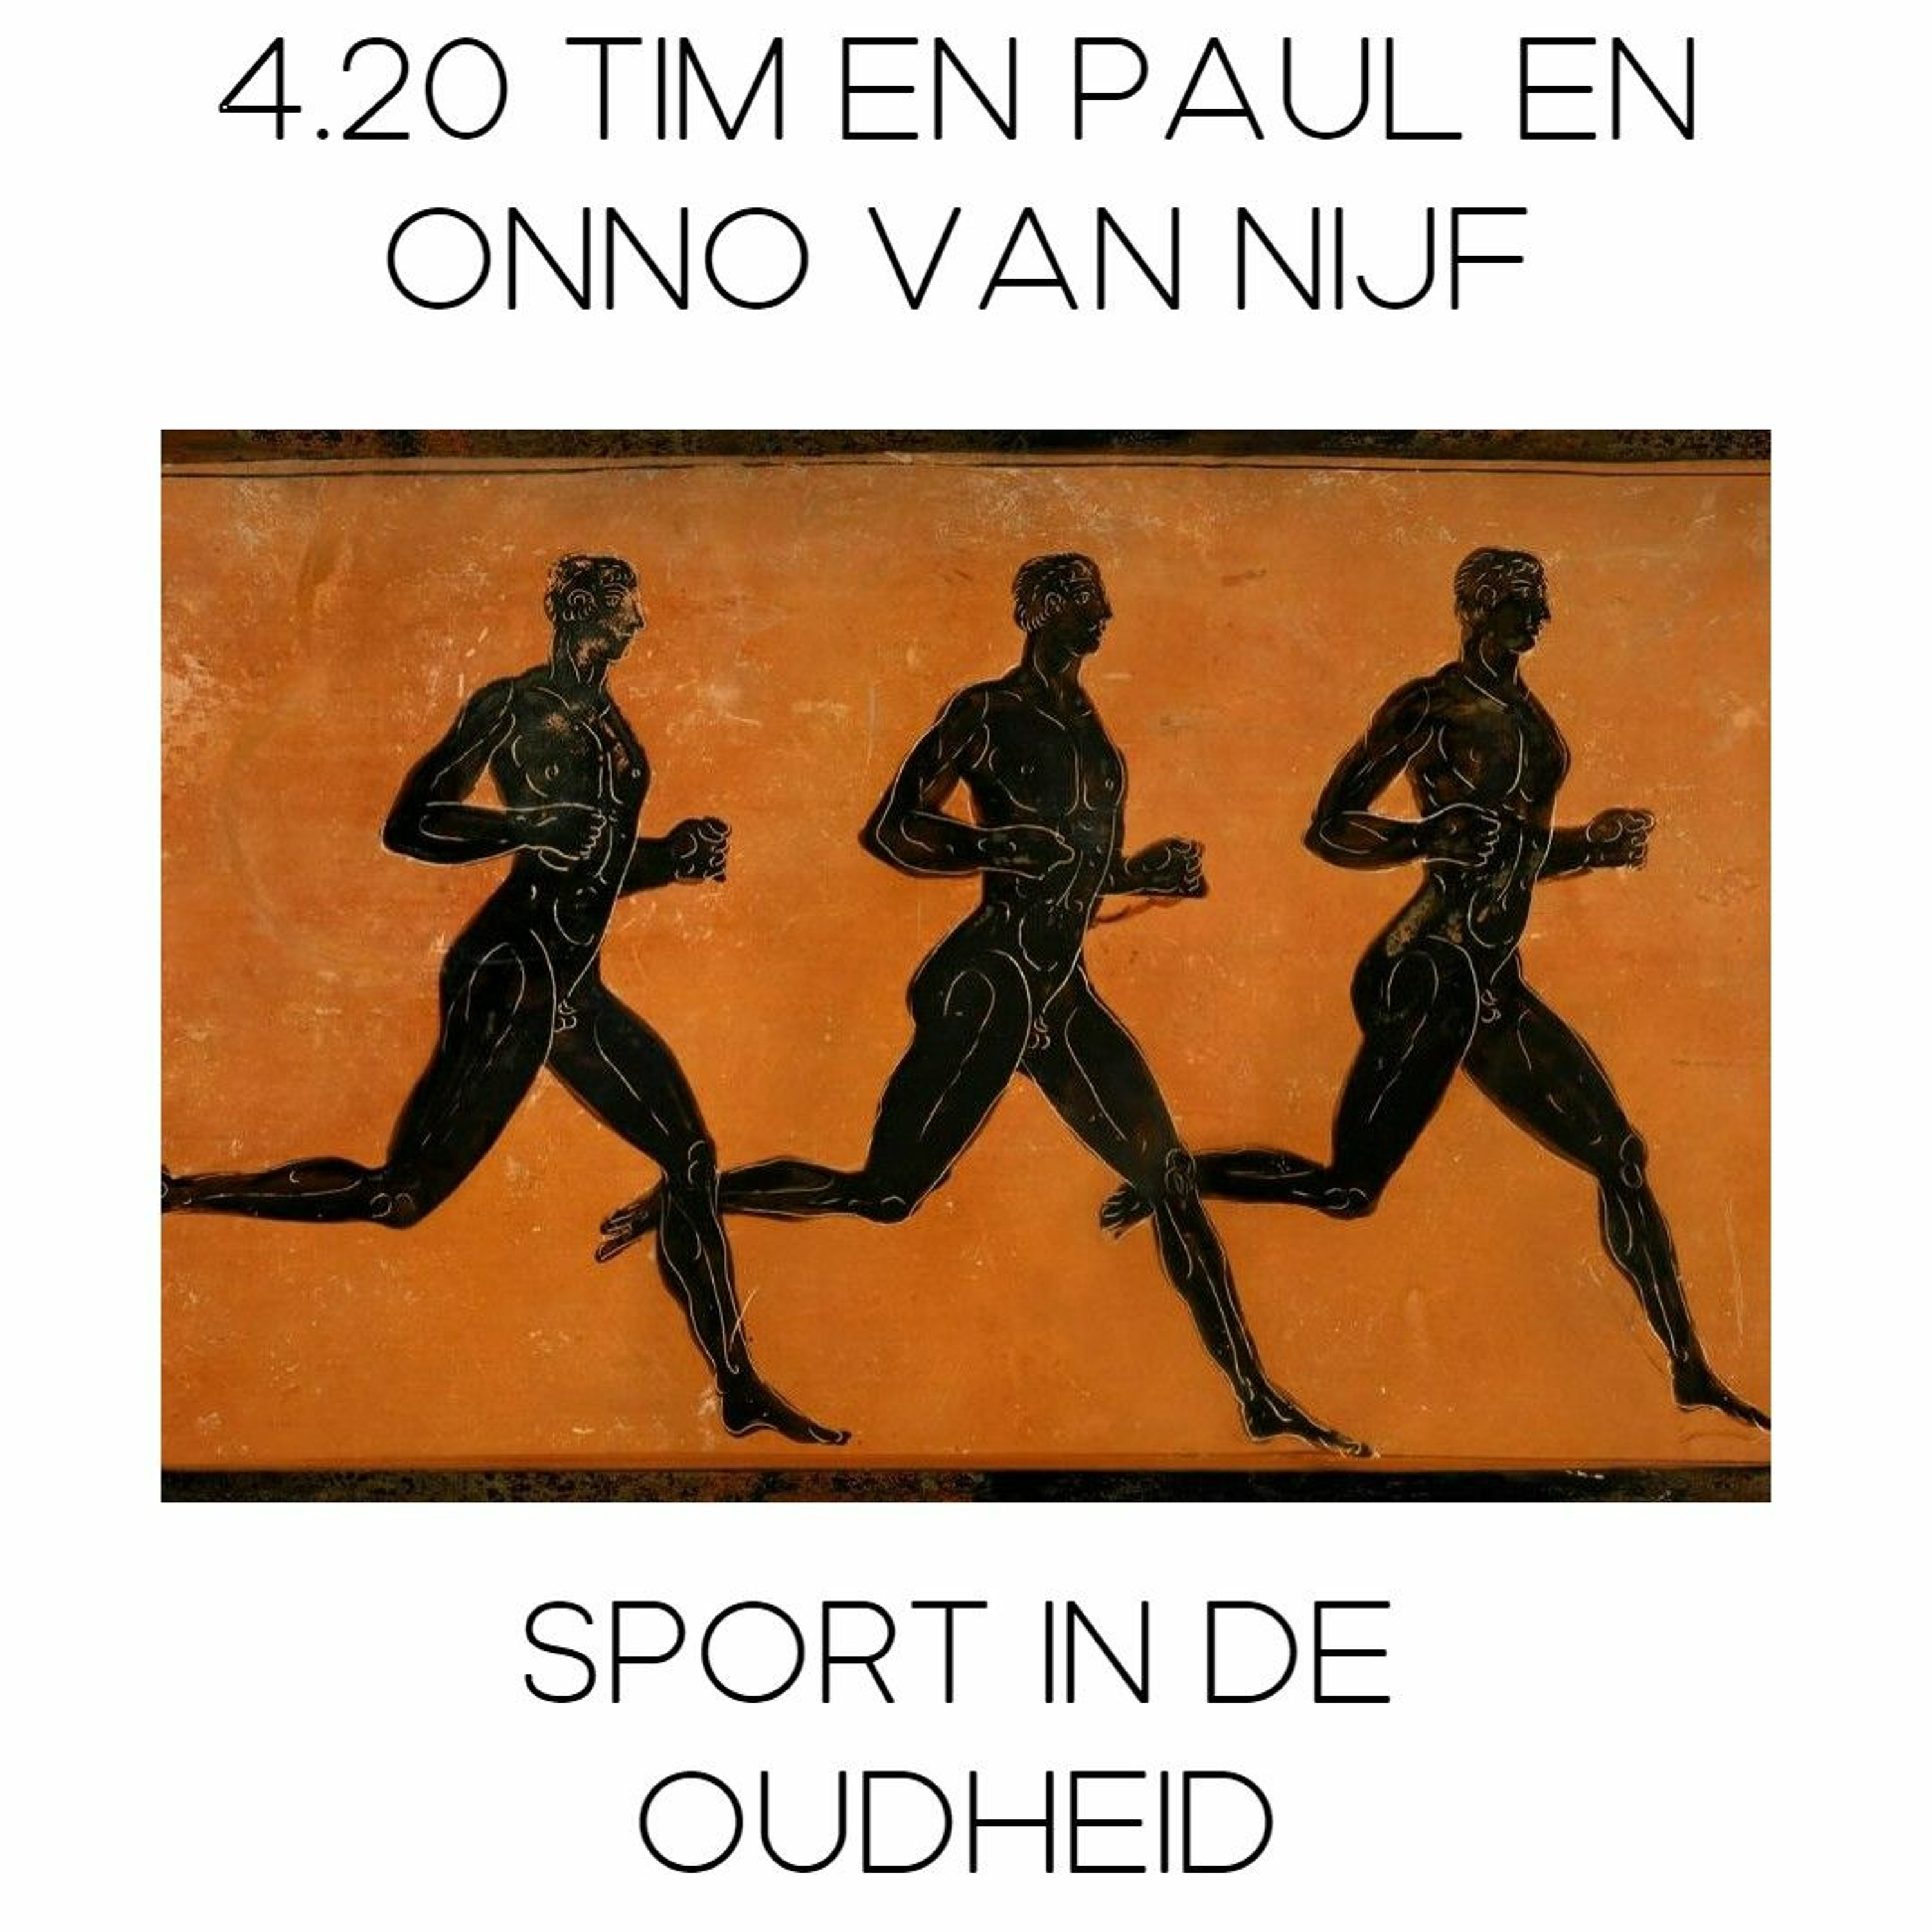 4.20 Tim en Paul en Sport in de Oudheid